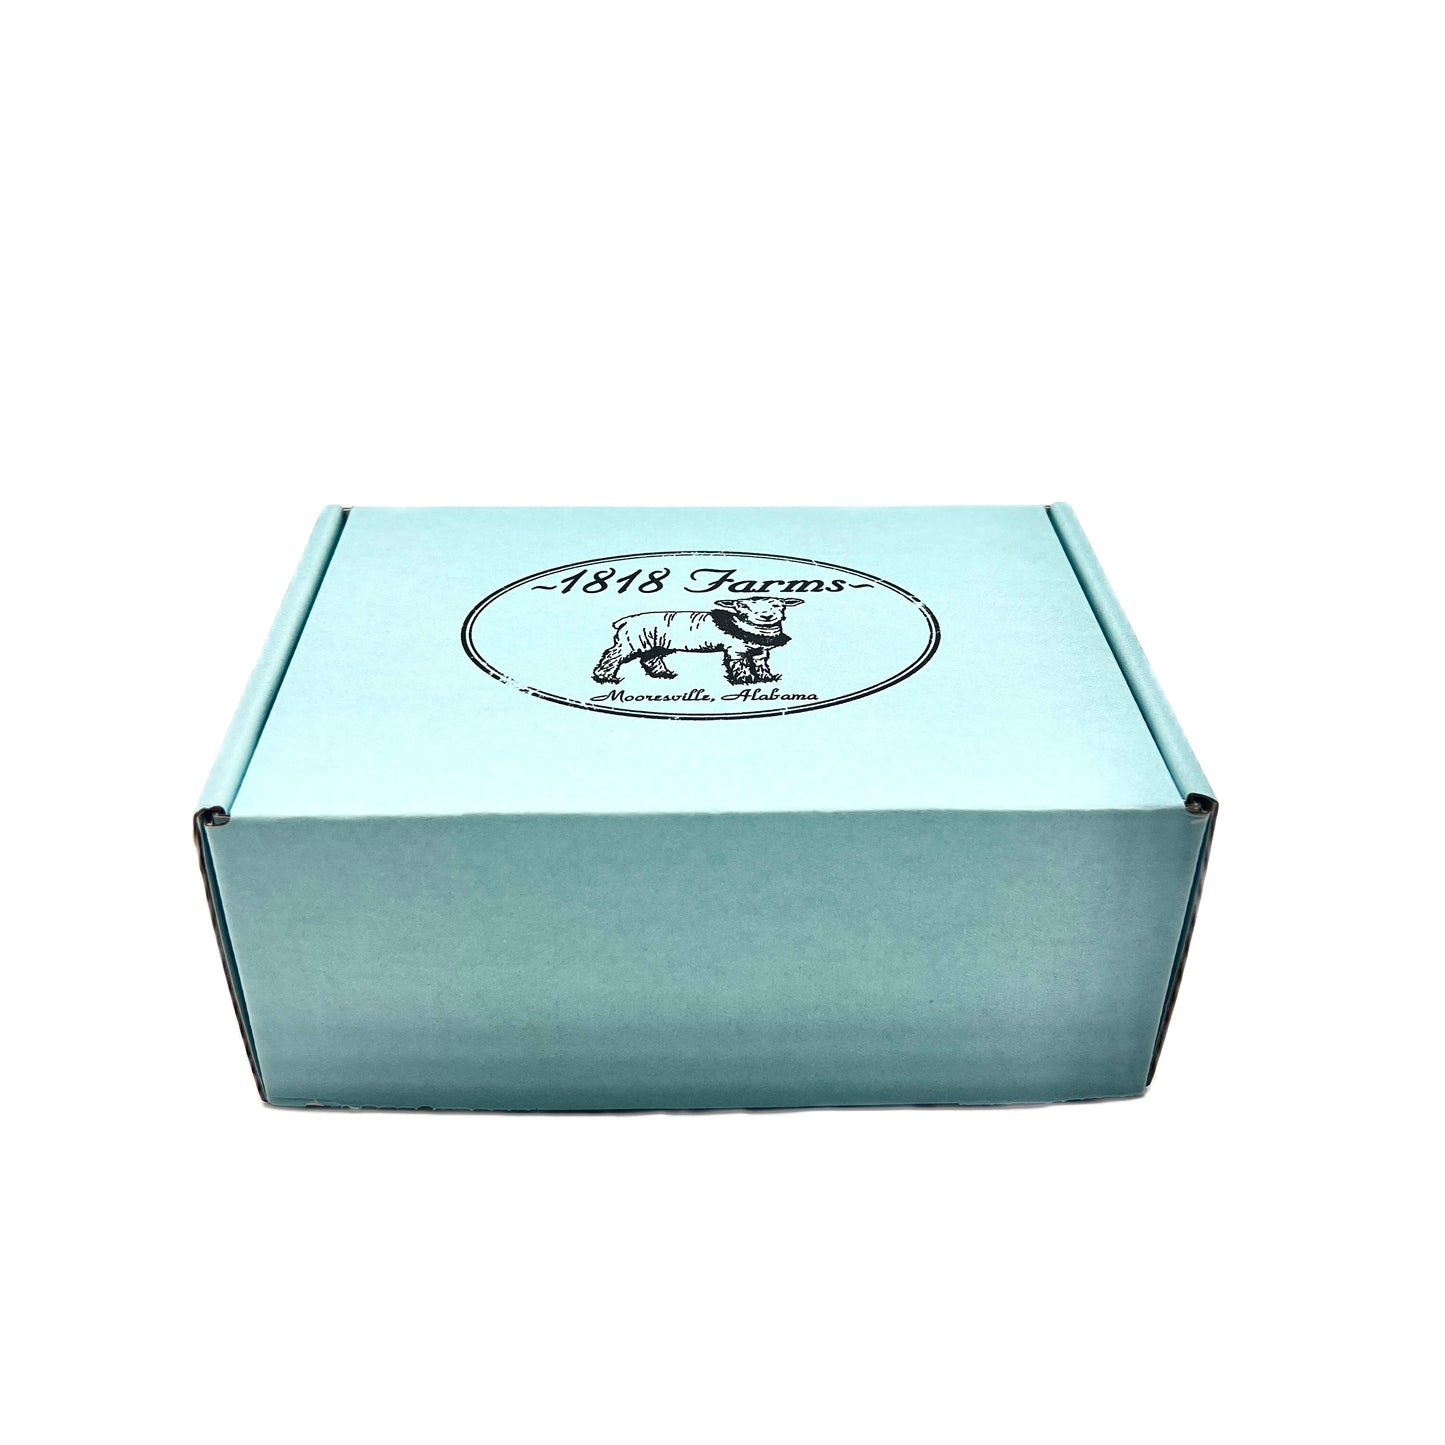 Shea Creme Sampler Box (2 fl oz jar sizes) Gift Basket 1818 Farms   